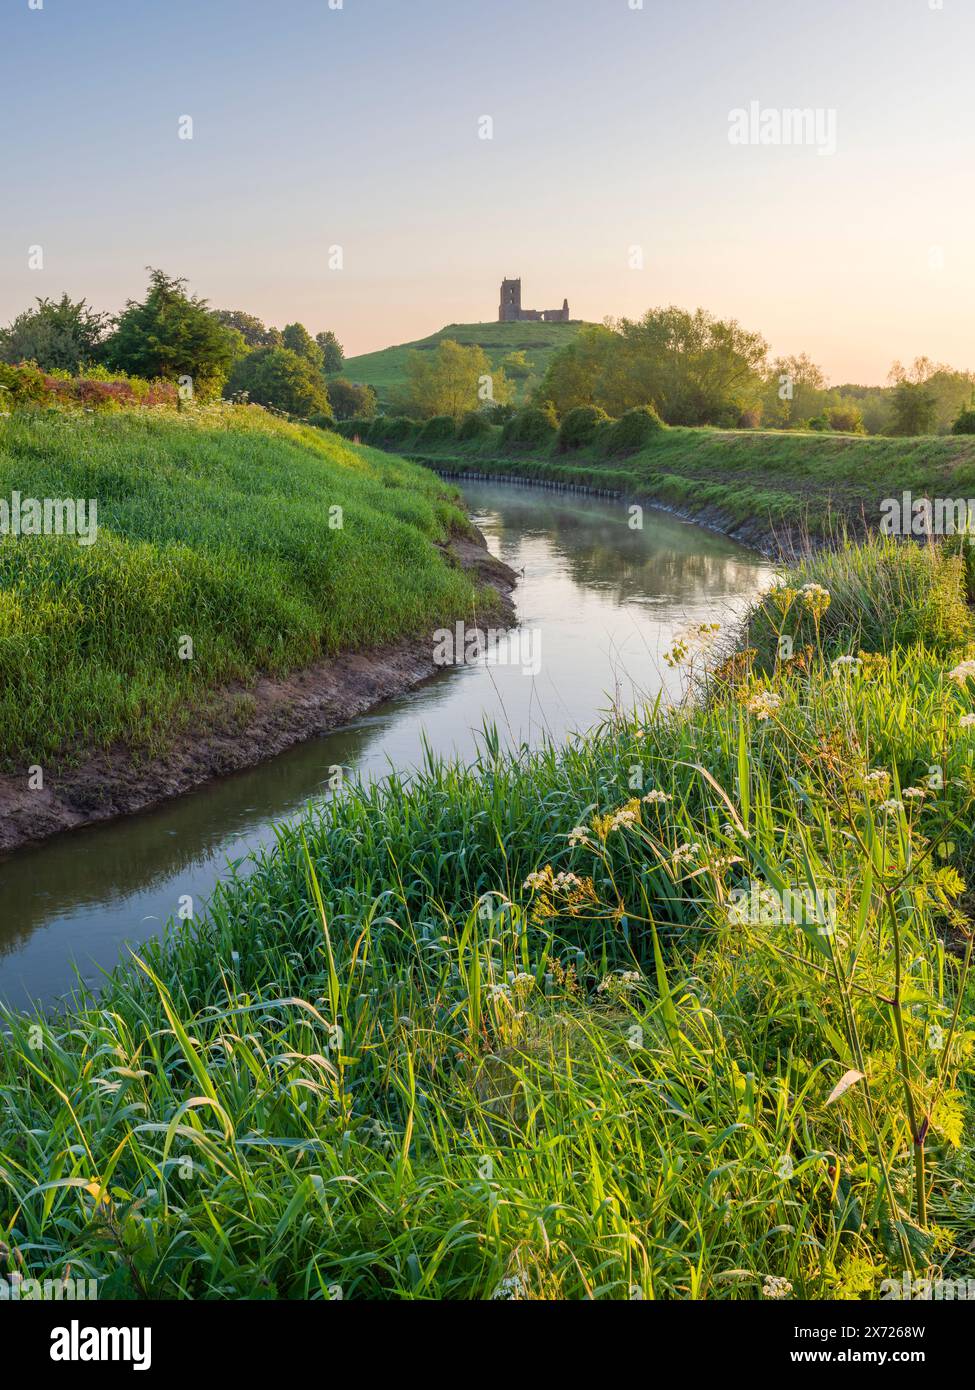 Burrow Mump de la confluence de la rivière Tone et de la rivière Parrett sur les niveaux Somerset à Burrowbridge, en Angleterre. Banque D'Images